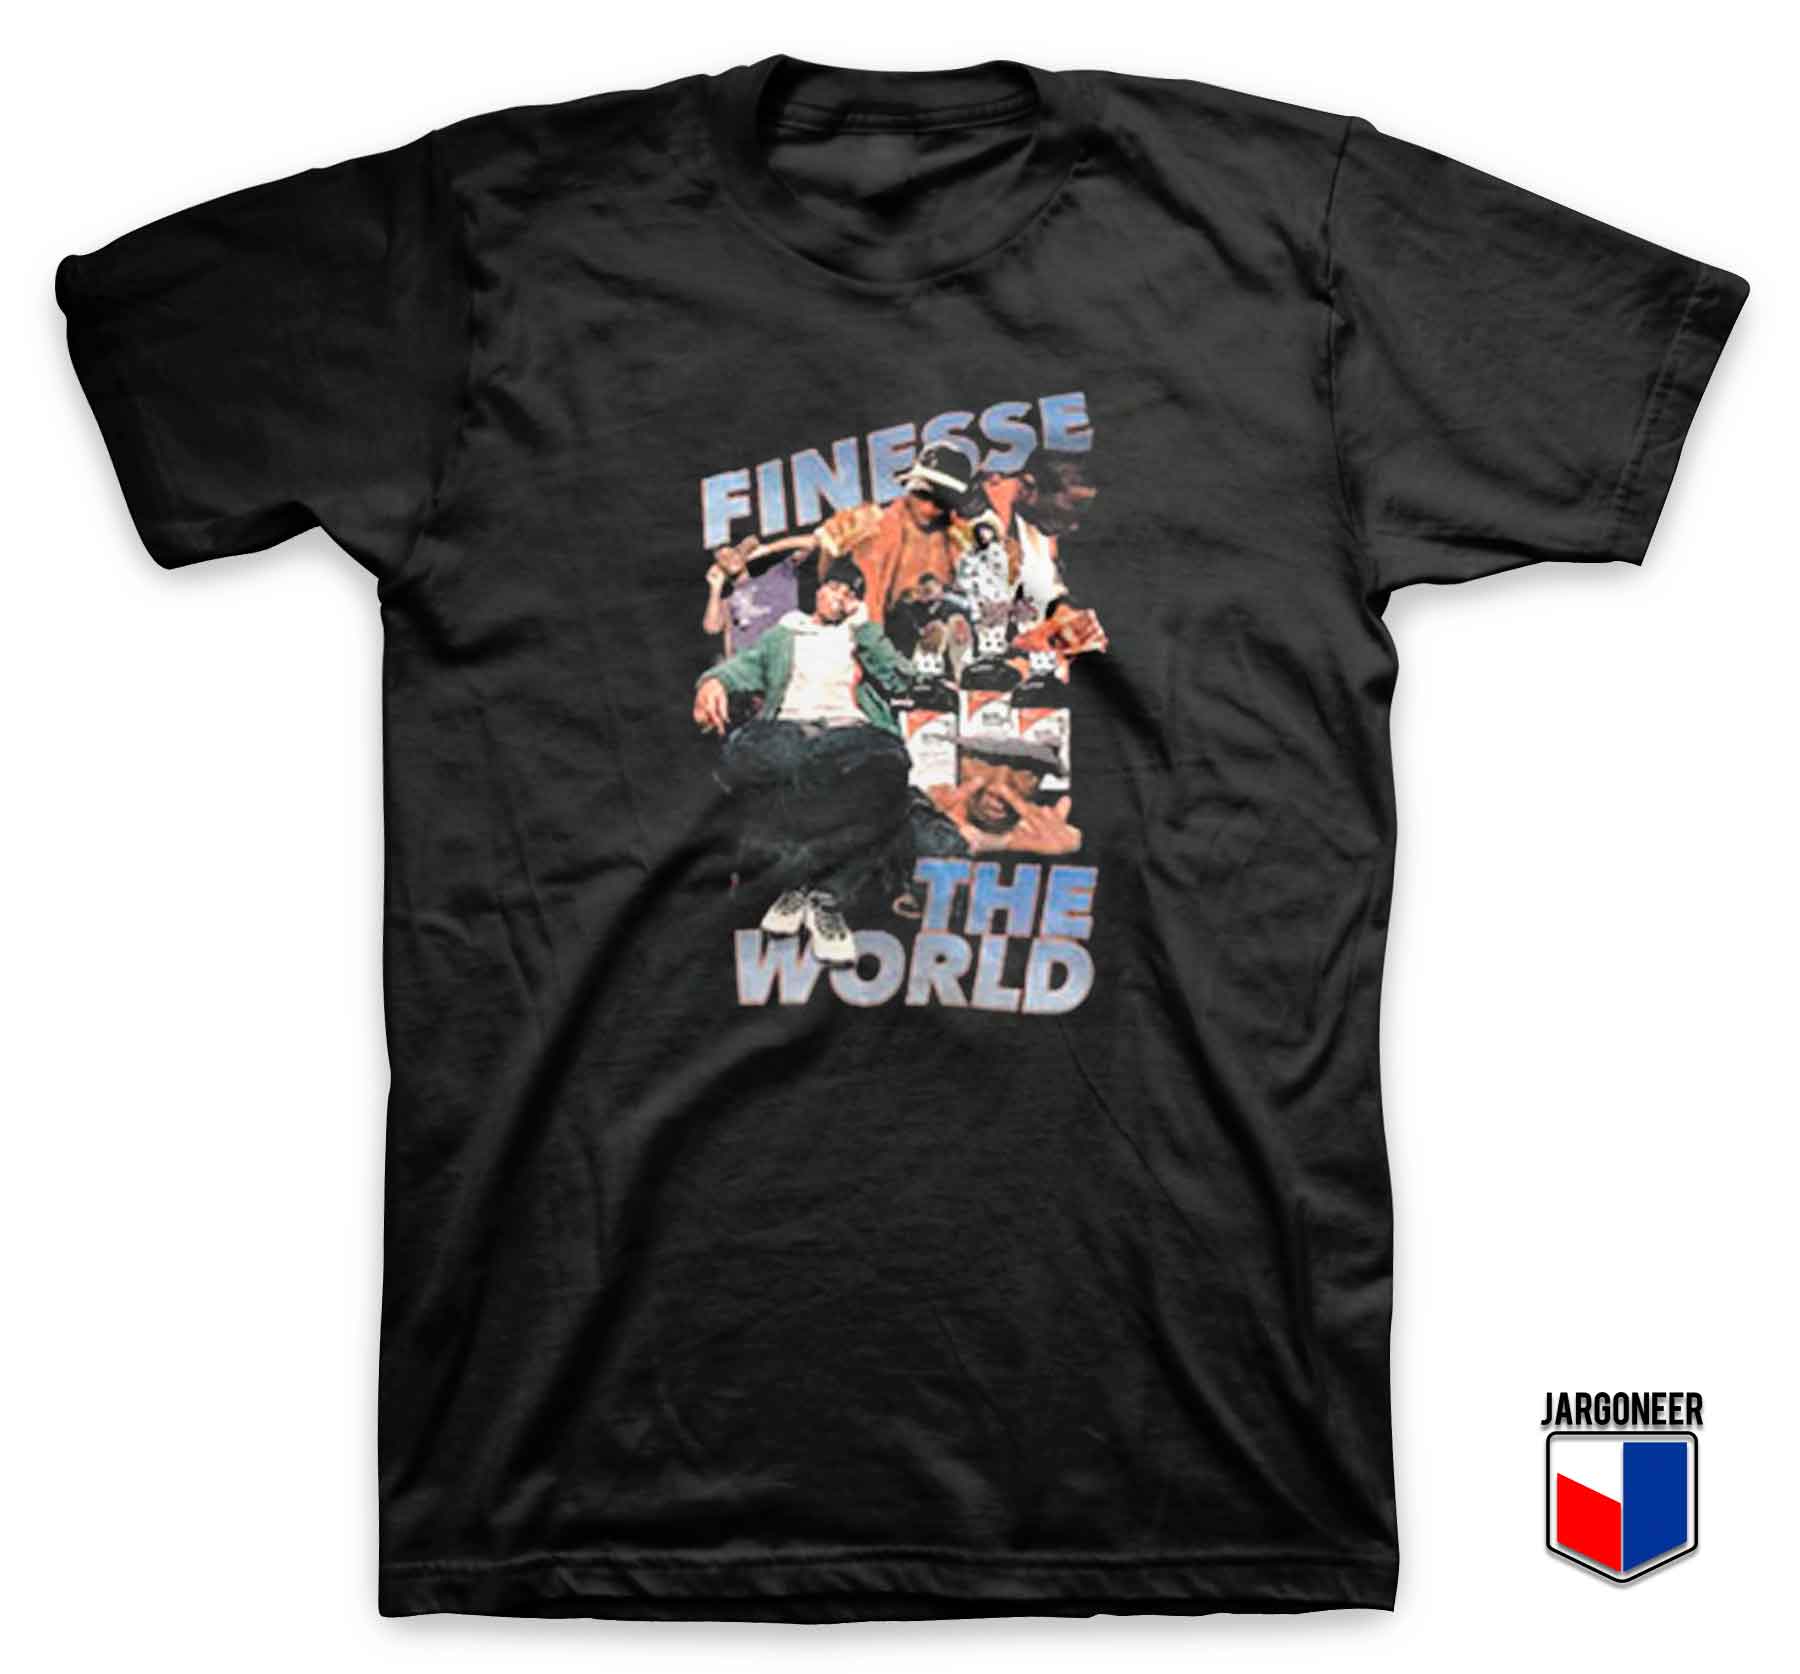 Finesse The World T Shirt - Shop Unique Graphic Cool Shirt Designs